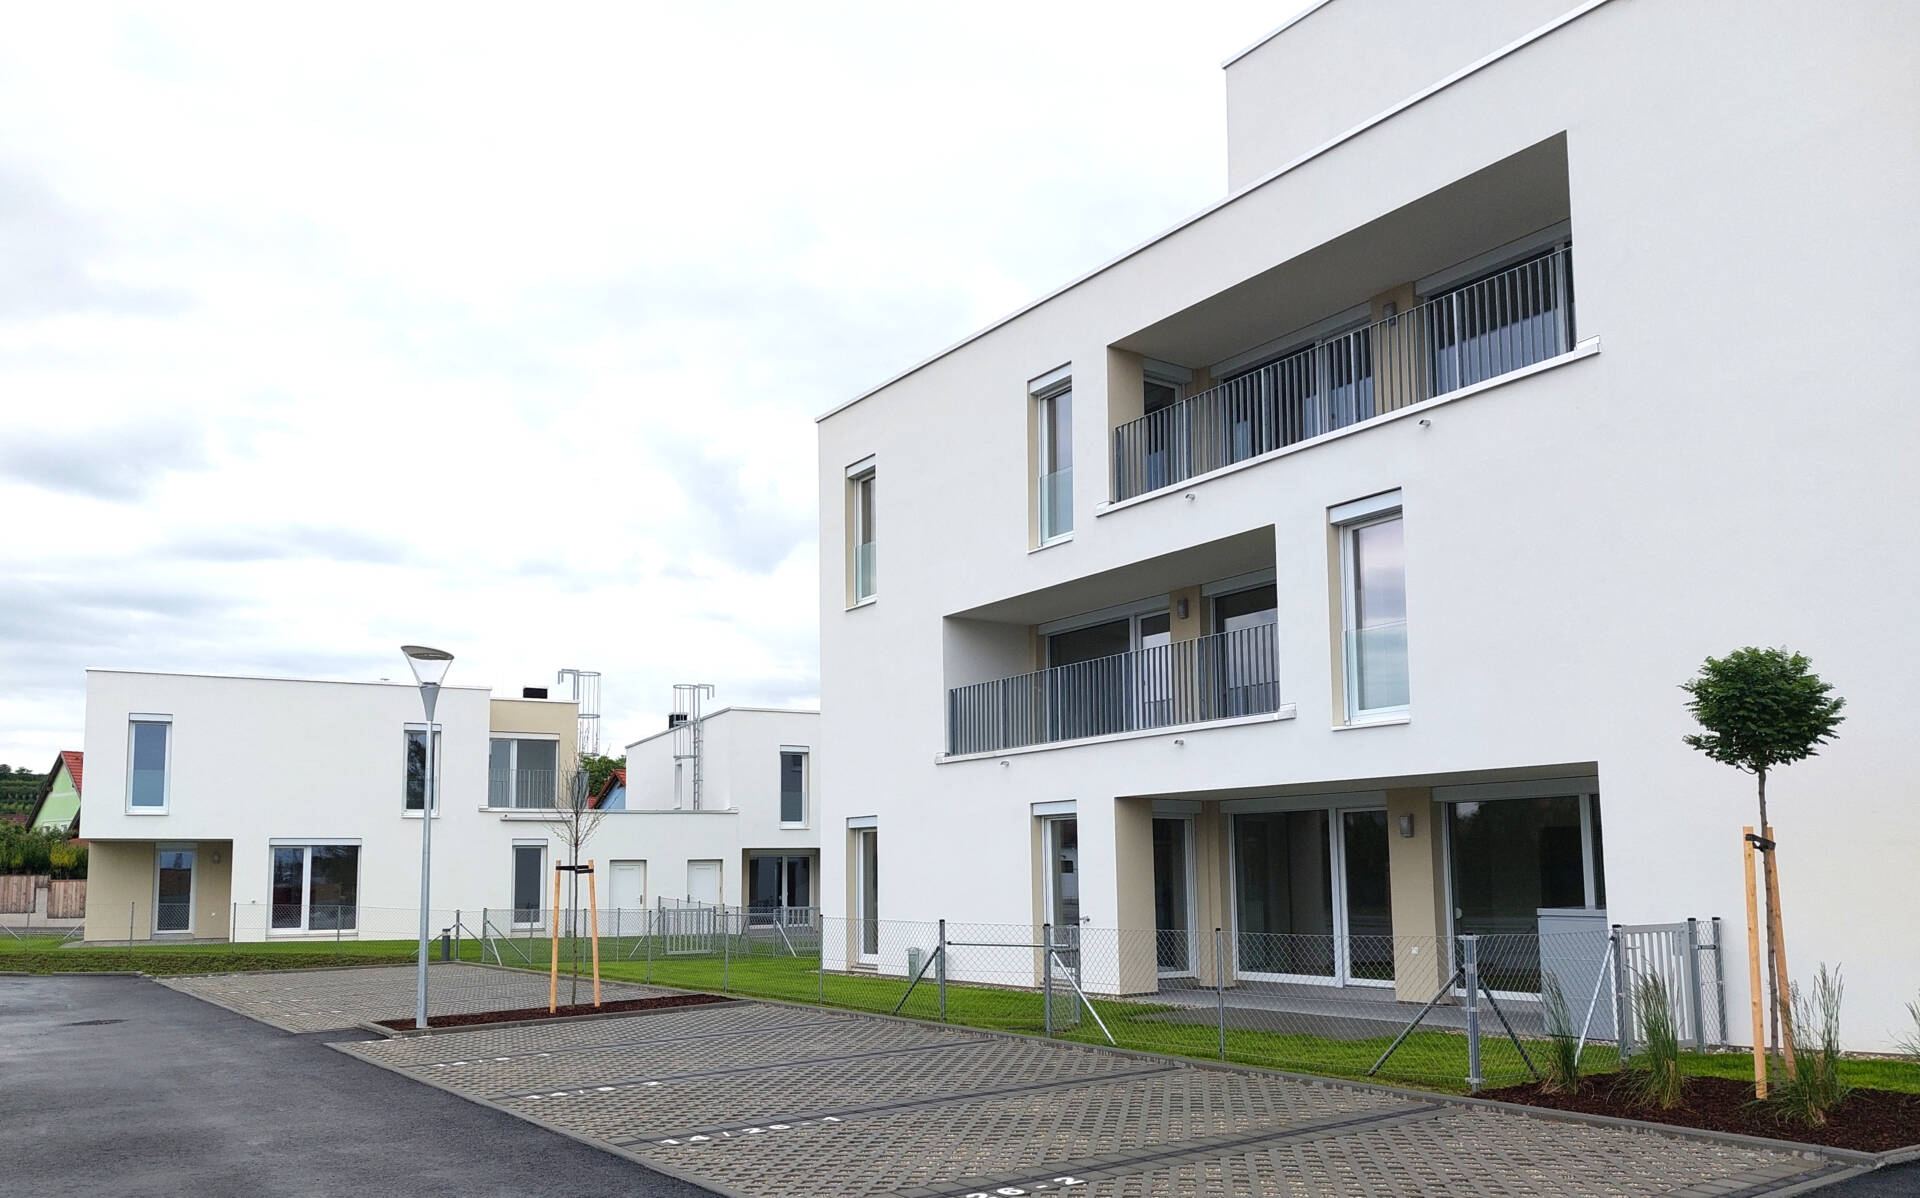 Neubau einer Wohnhausanlage, Bauteil 6A in Kirchberg am Wagram durch die Bauunternehmen Schubrig Krems und Gebrüder Lang.